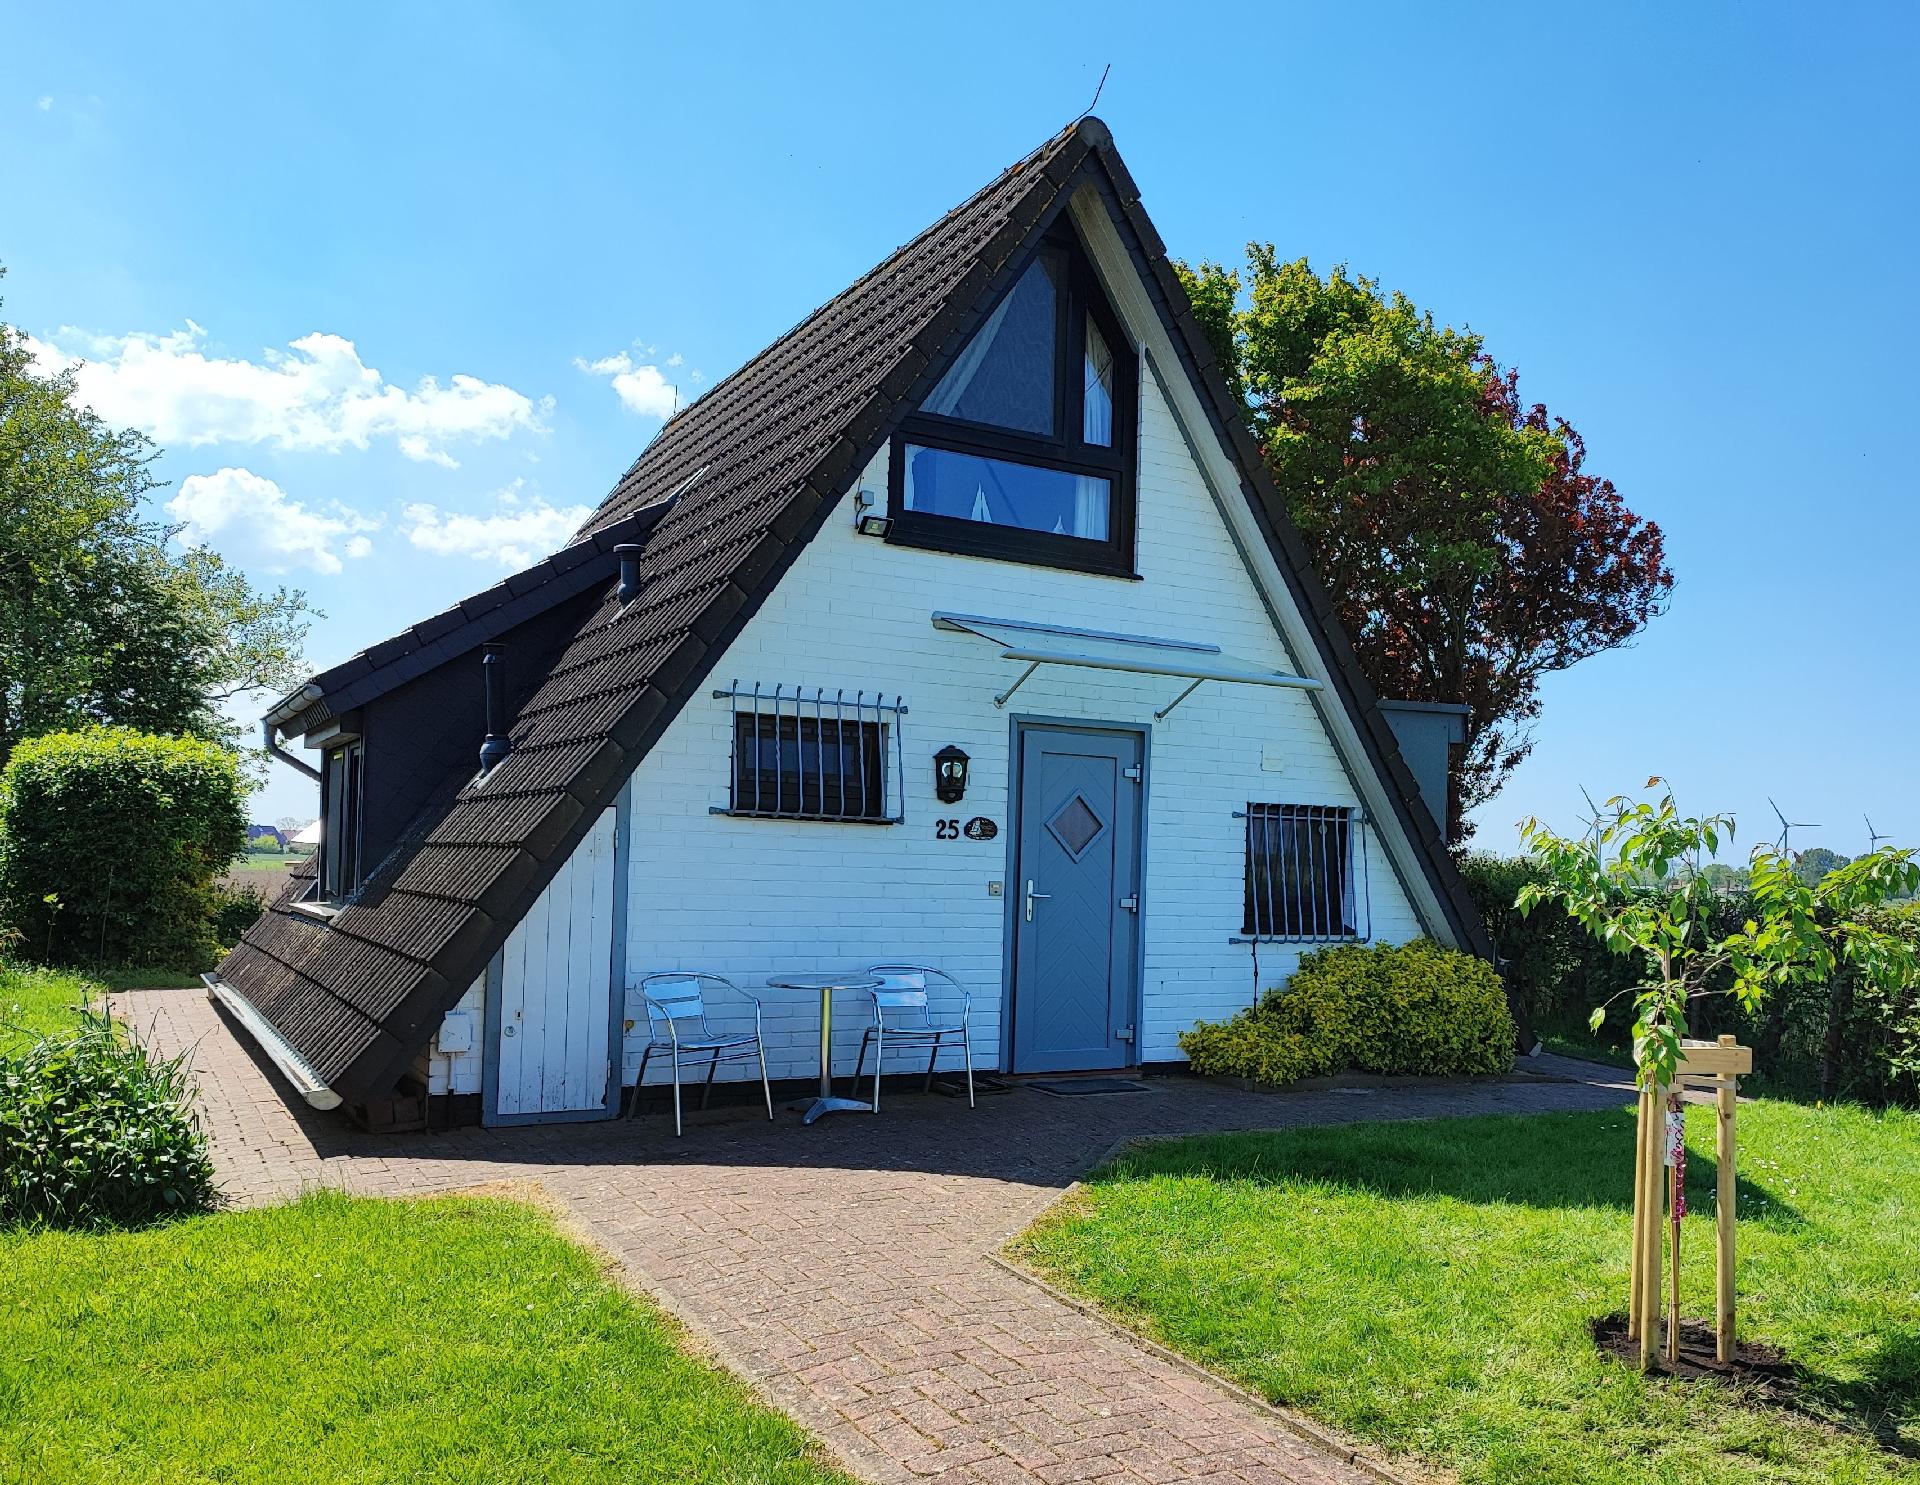 Ferienhaus mit Terrasse und Garten in einer Anlage Ferienhaus in Deutschland